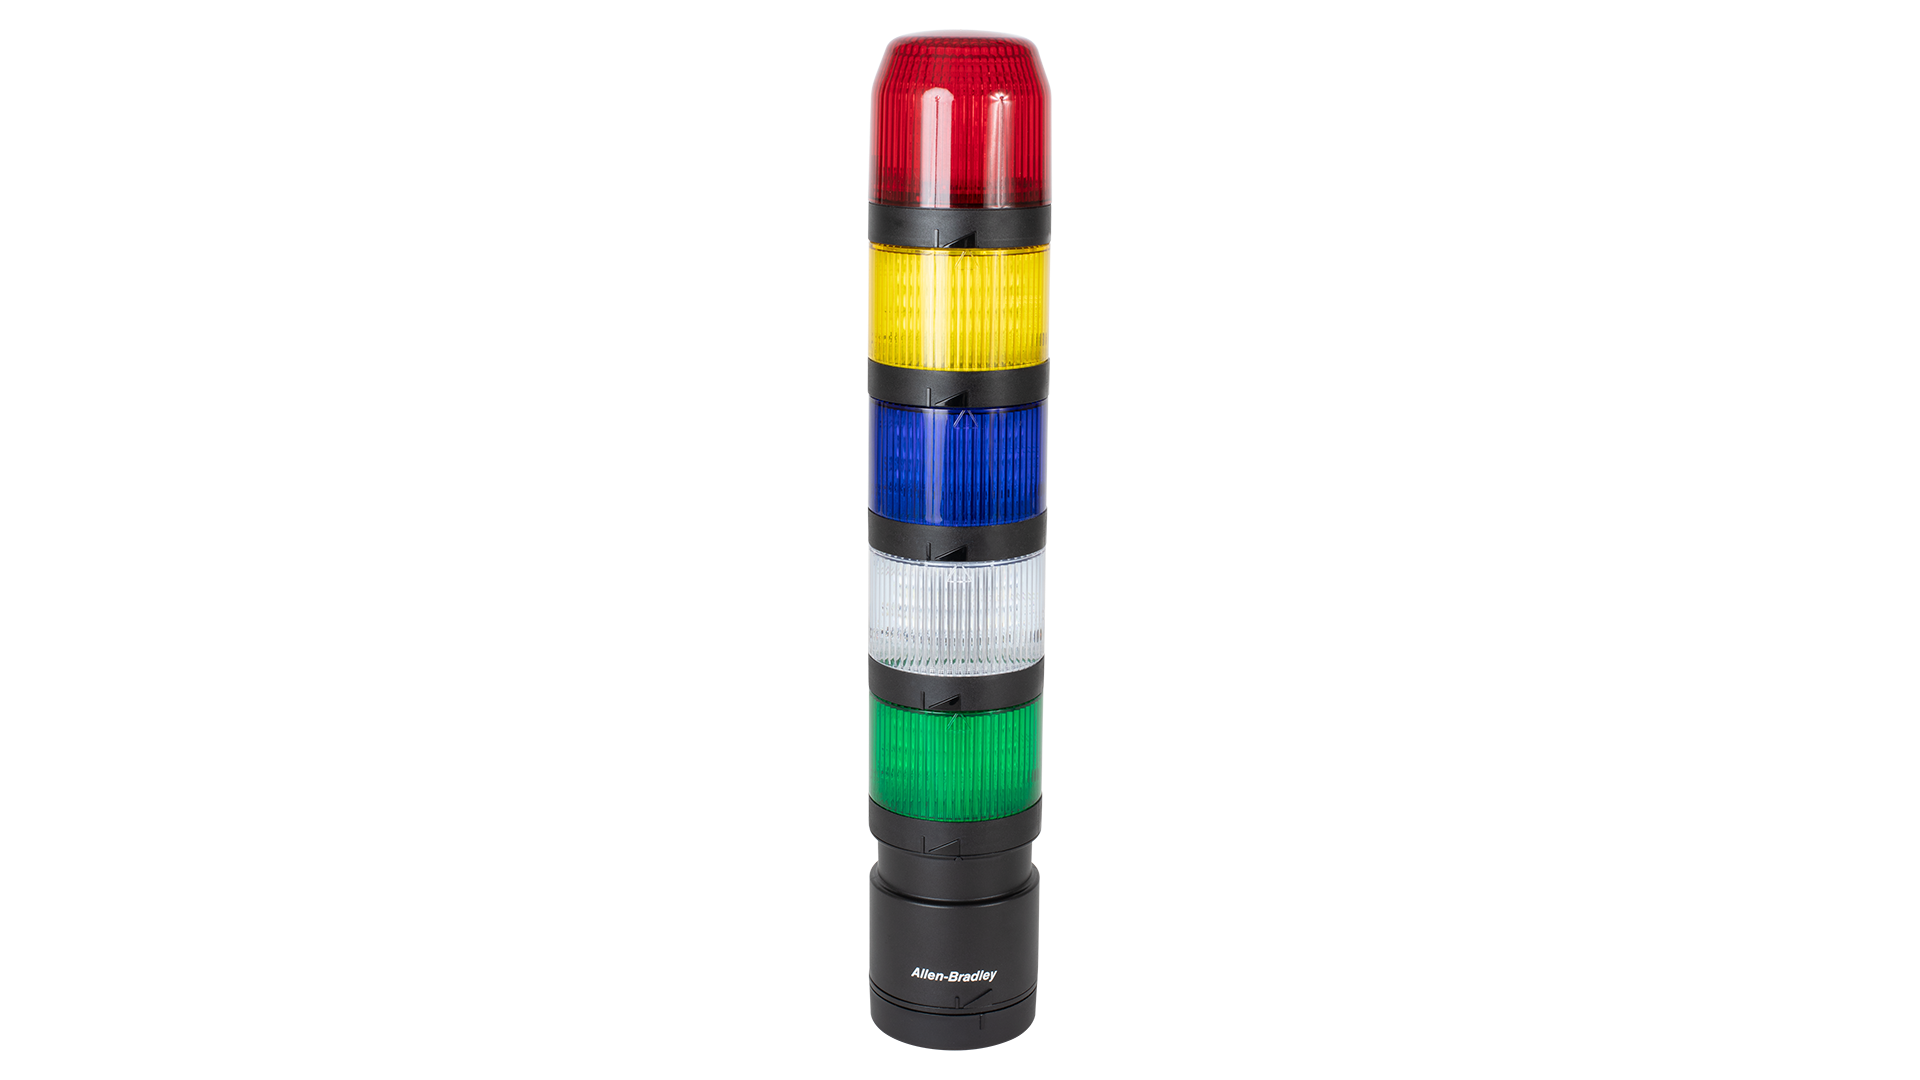 Torretta luminosa IO-Link dall'alto verso il basso - modulo avvisatore acustico trasduttore nero, moduli luminosi rosso, arancione e verde non accesi, base di montaggio verticale nera